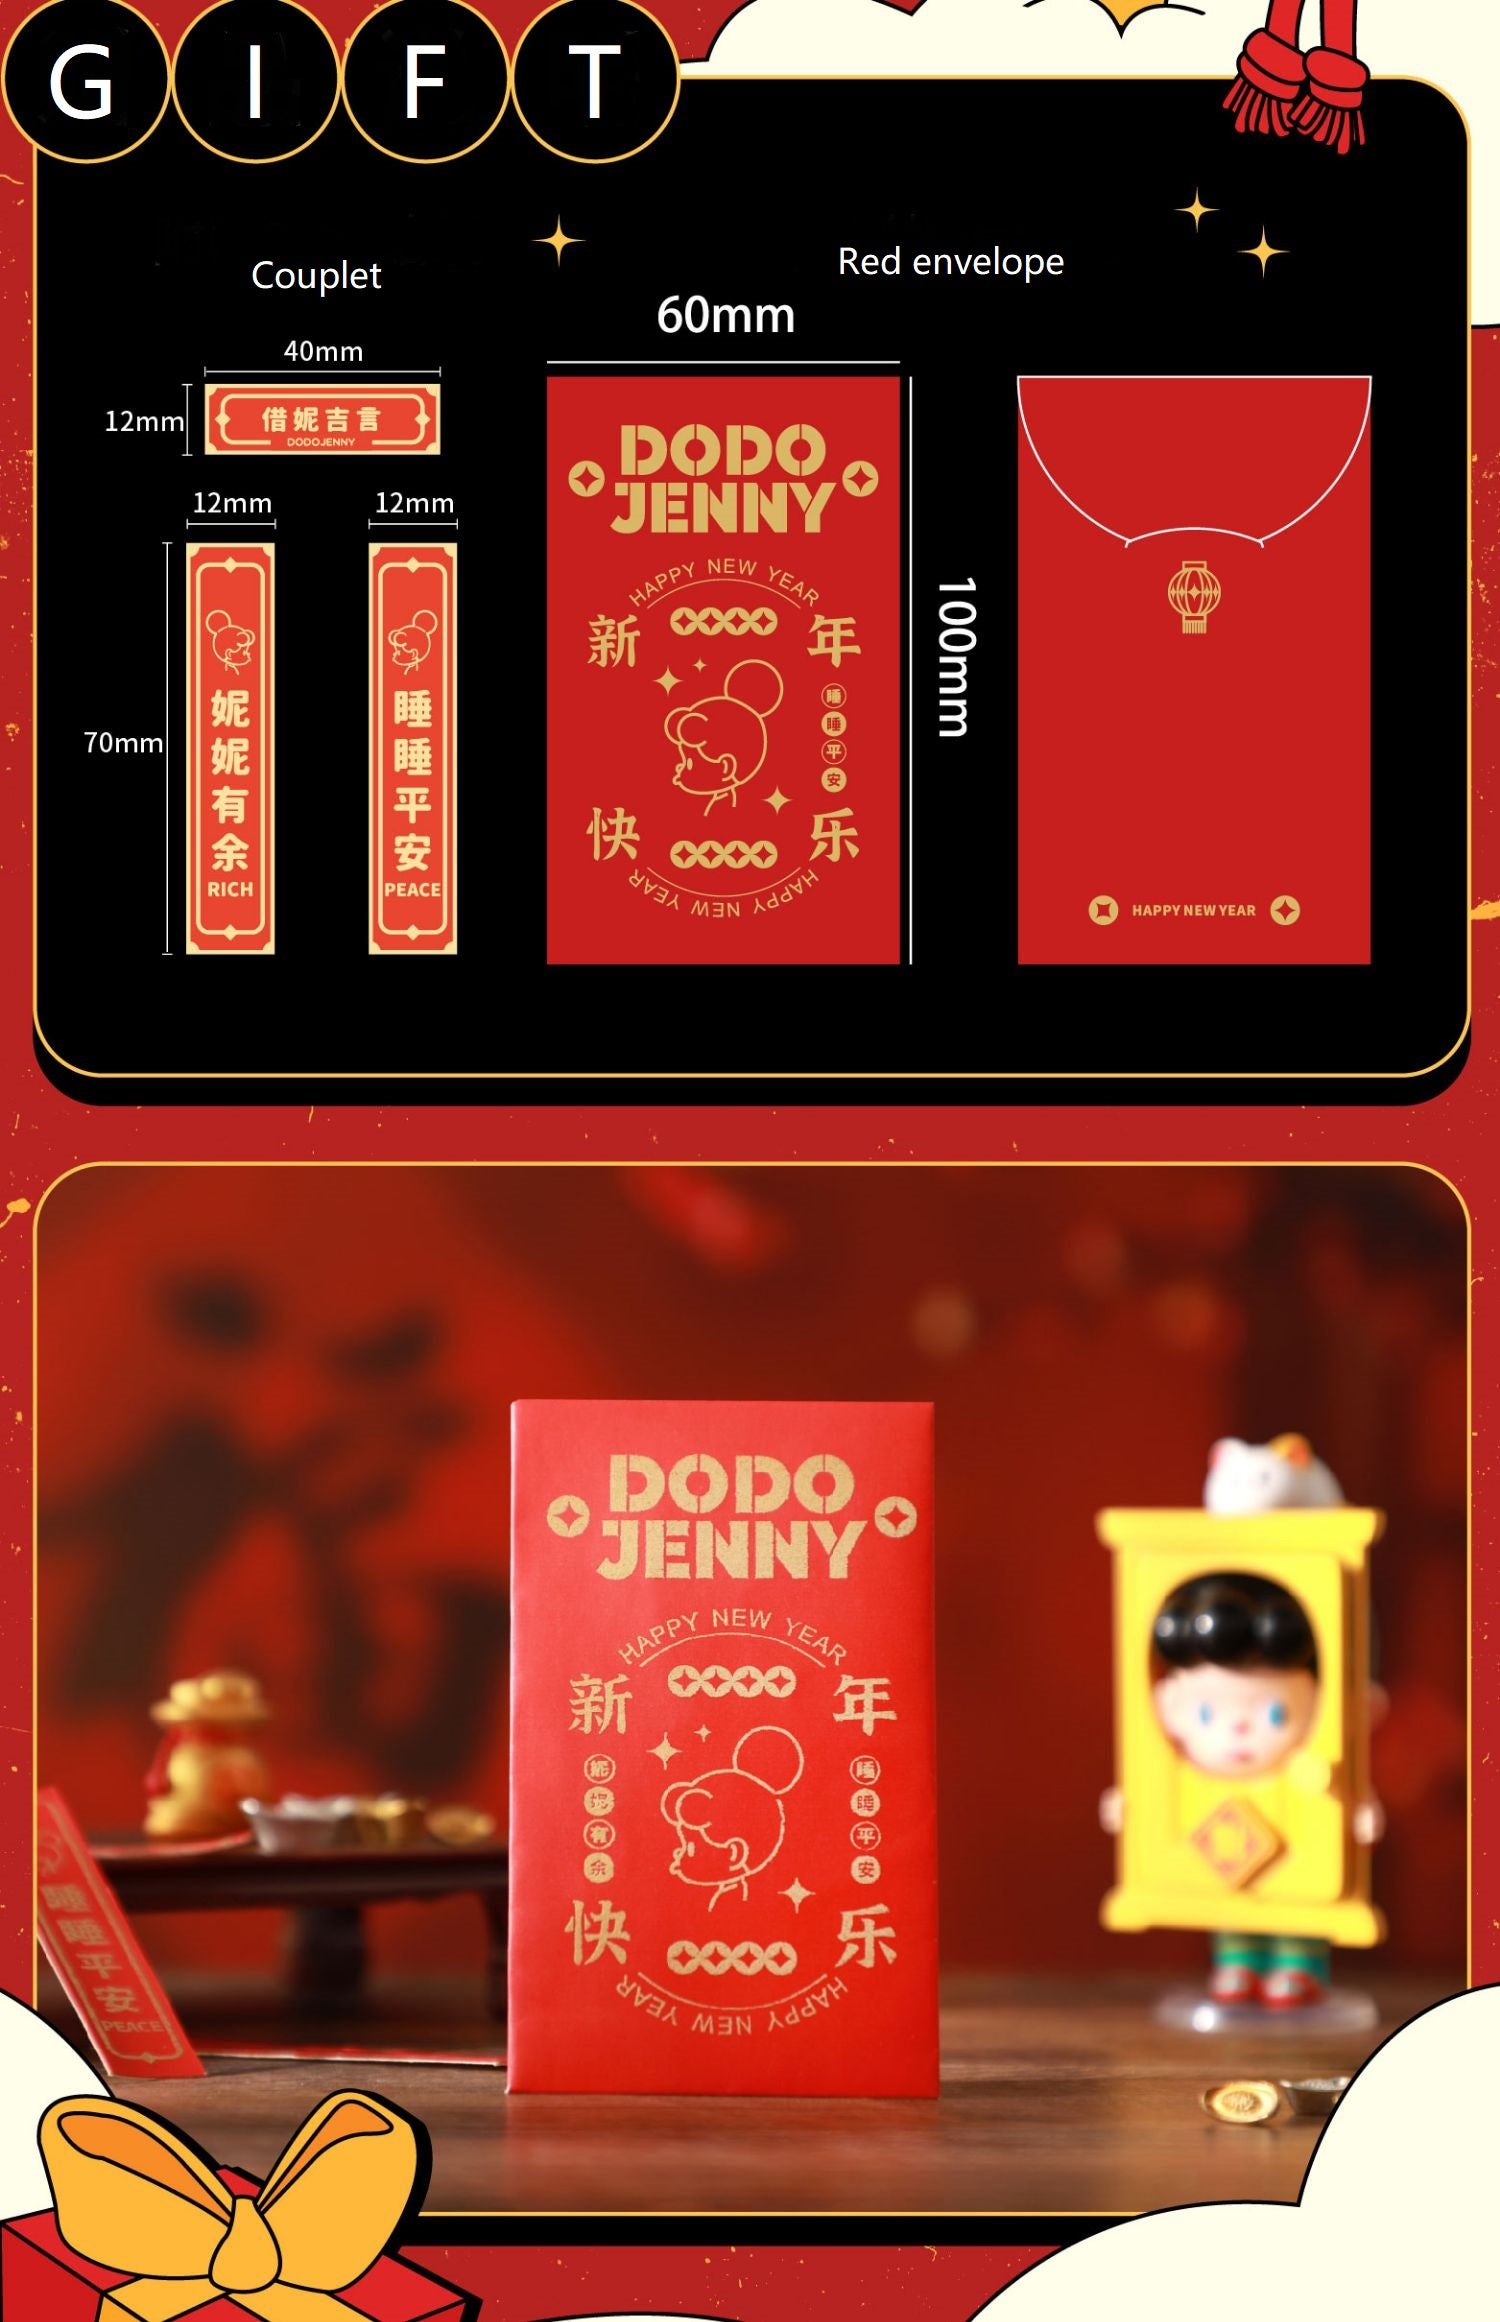 [TREEINART] DODO JENNY - New Years Limited Art Toys